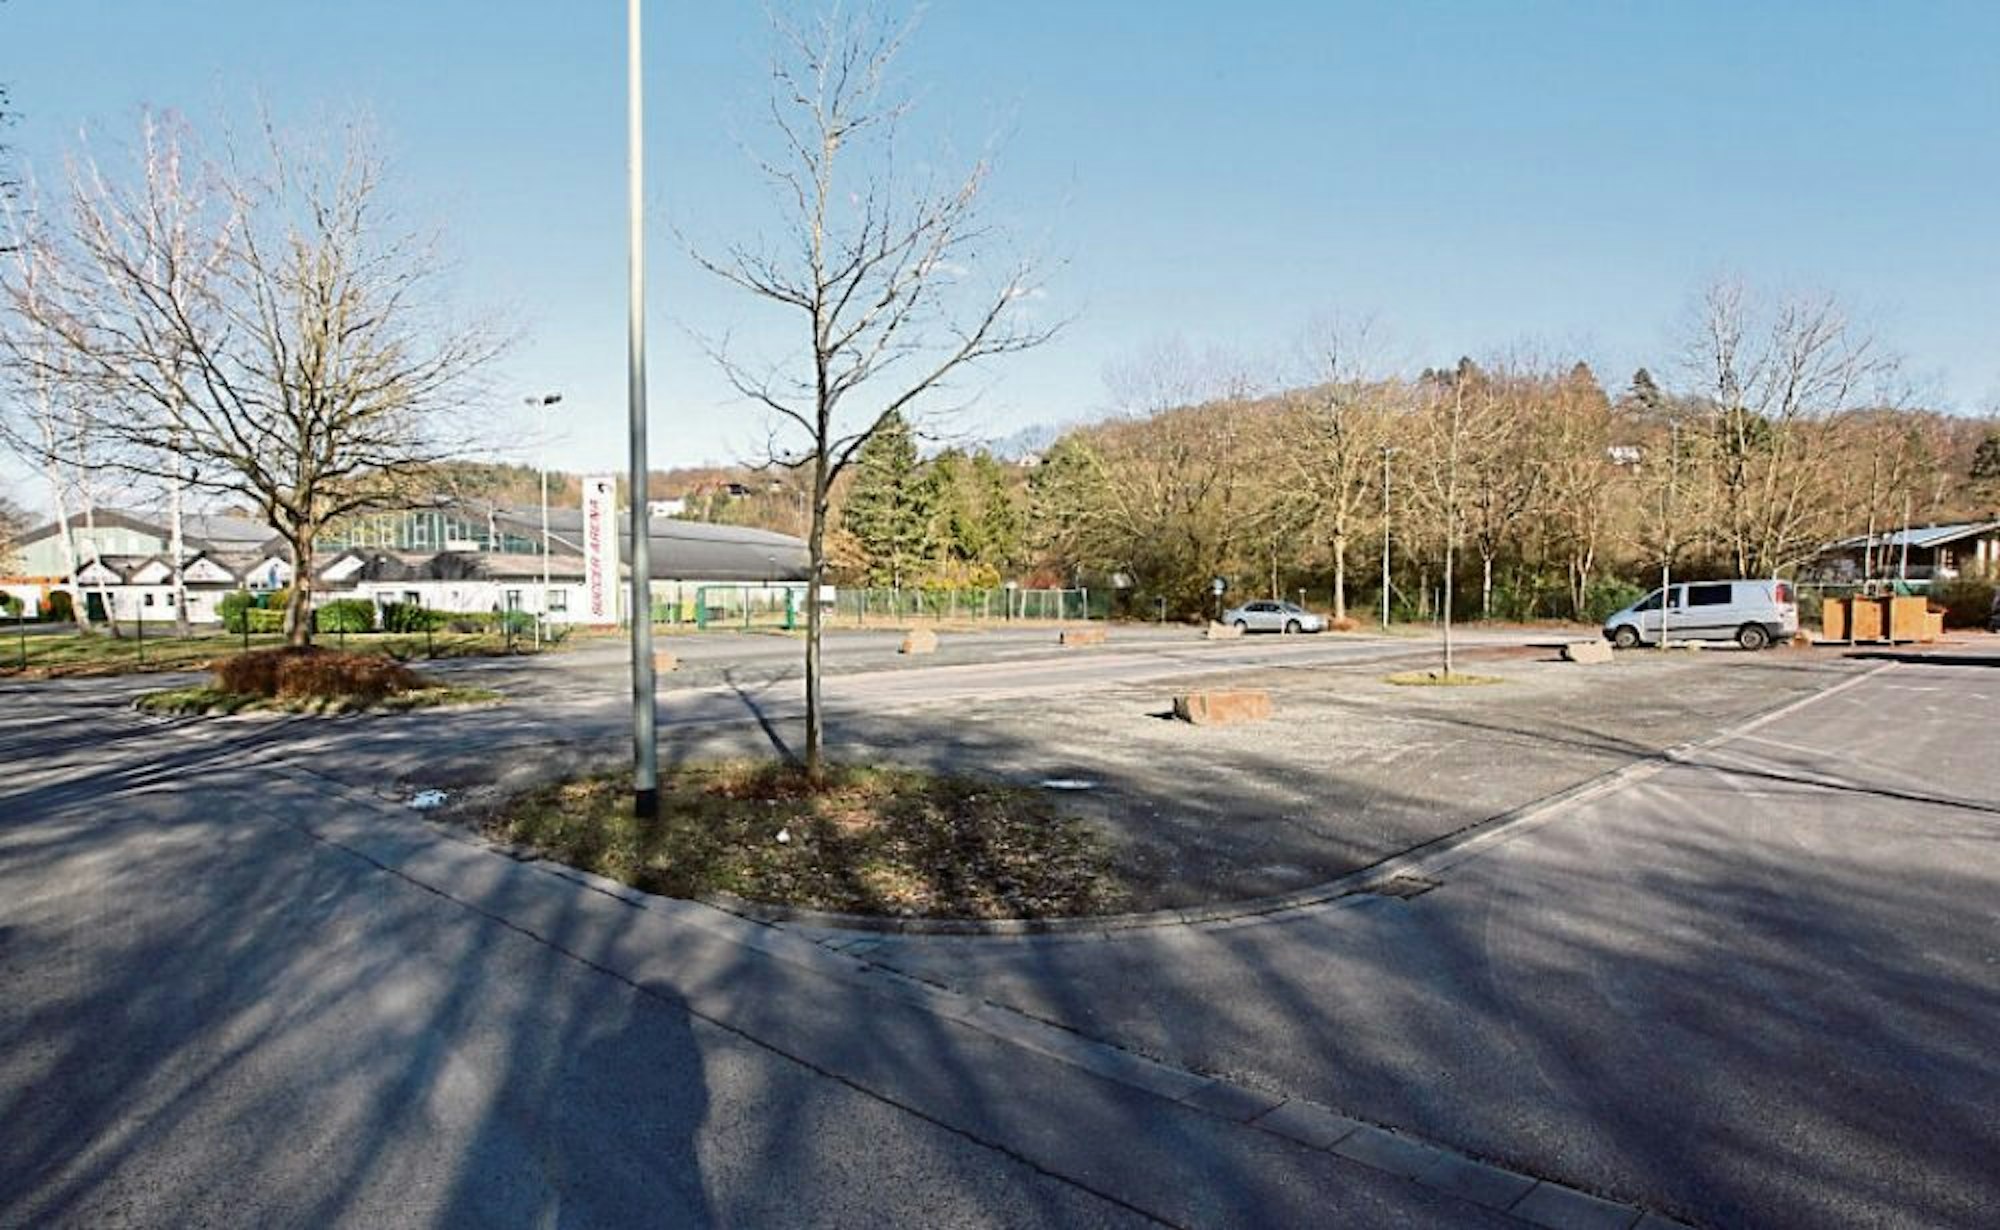 Auf dem Parkplatz der Jabachhalle soll das Lohmarer Schnelltestzentrum entstehen.